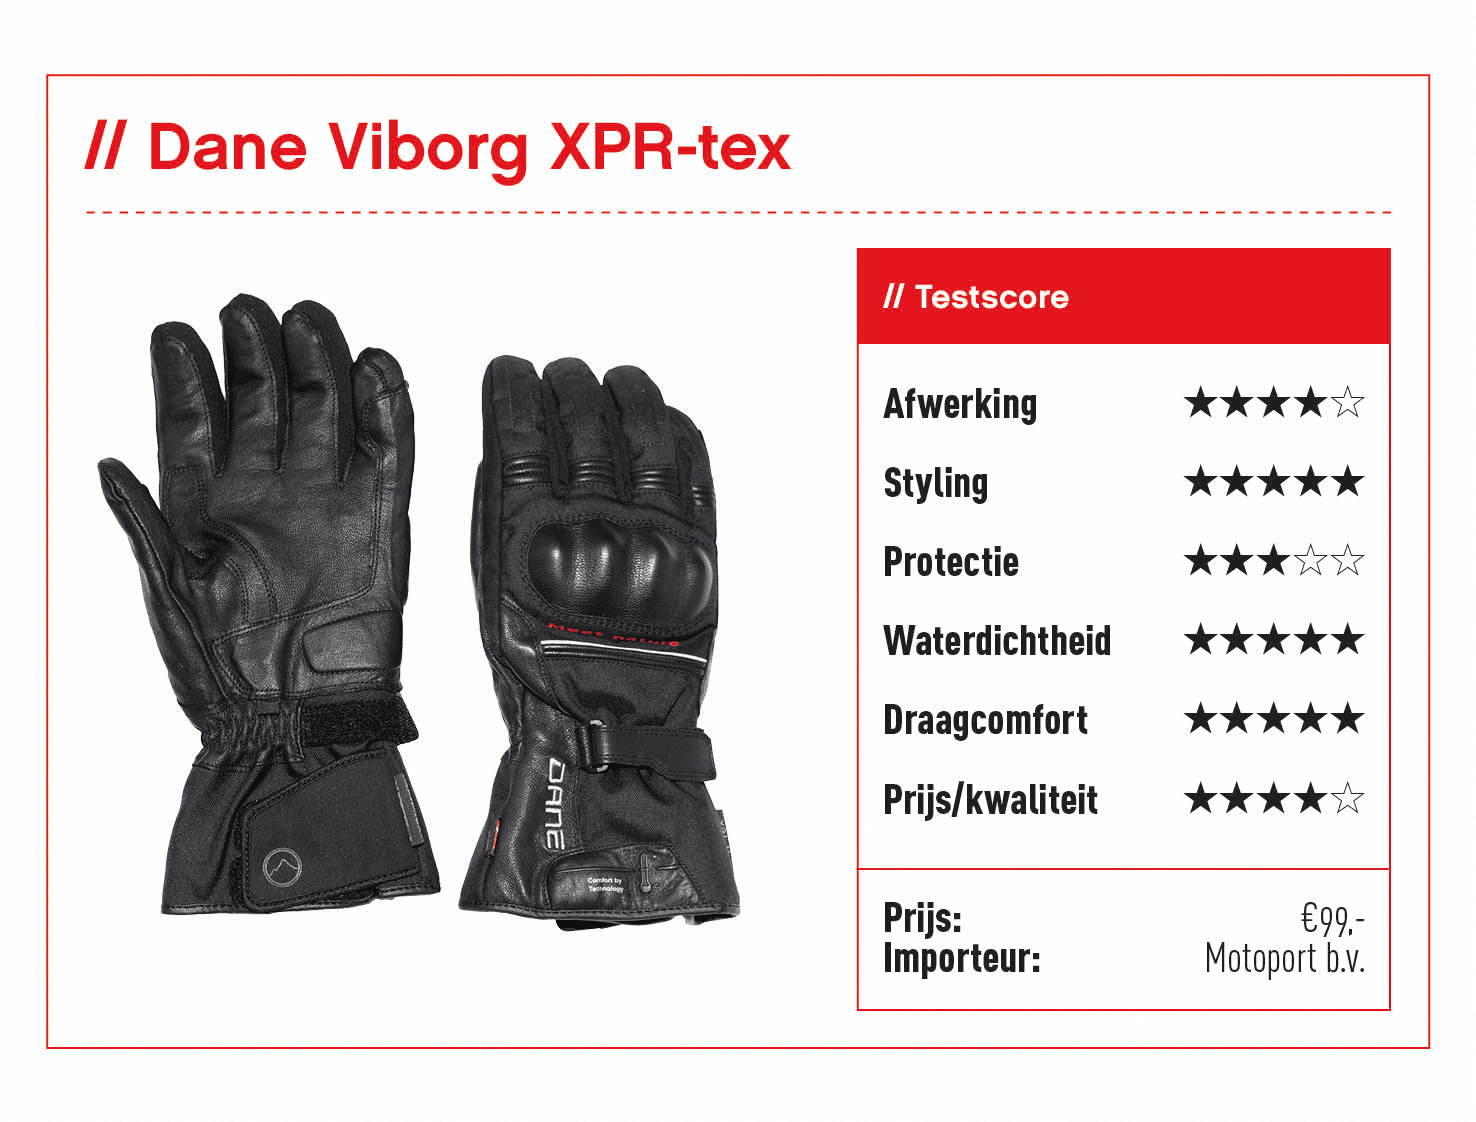 Dane Viborg XPR-tex handschoenen met score